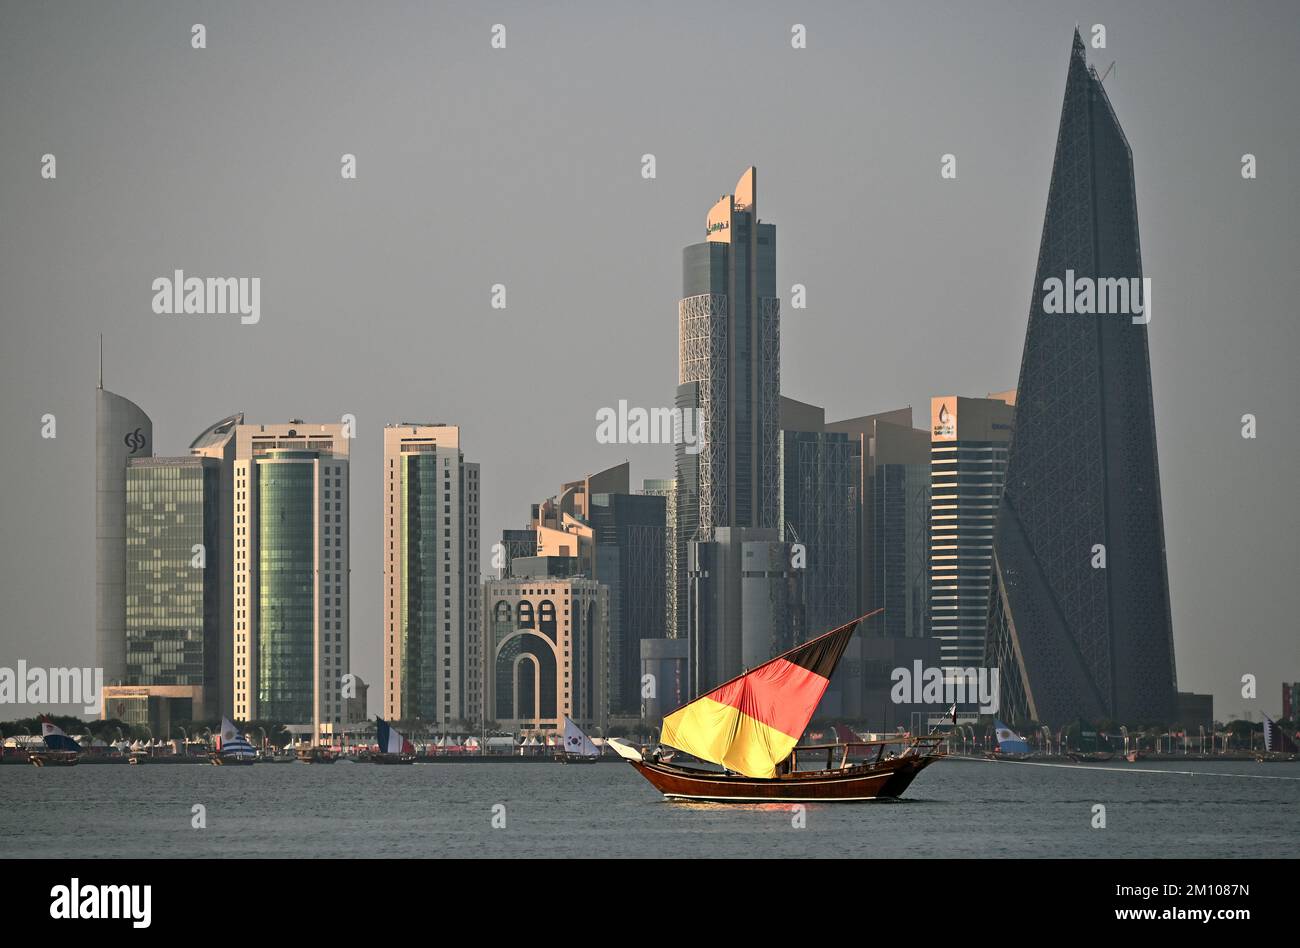 Fussball Weltmeisterschaft, Qatar 2022; Arabisches Segelboot Dhow mit Segel in deutschen Nationalfarben vor der Skyline von Doha. Stock Photo